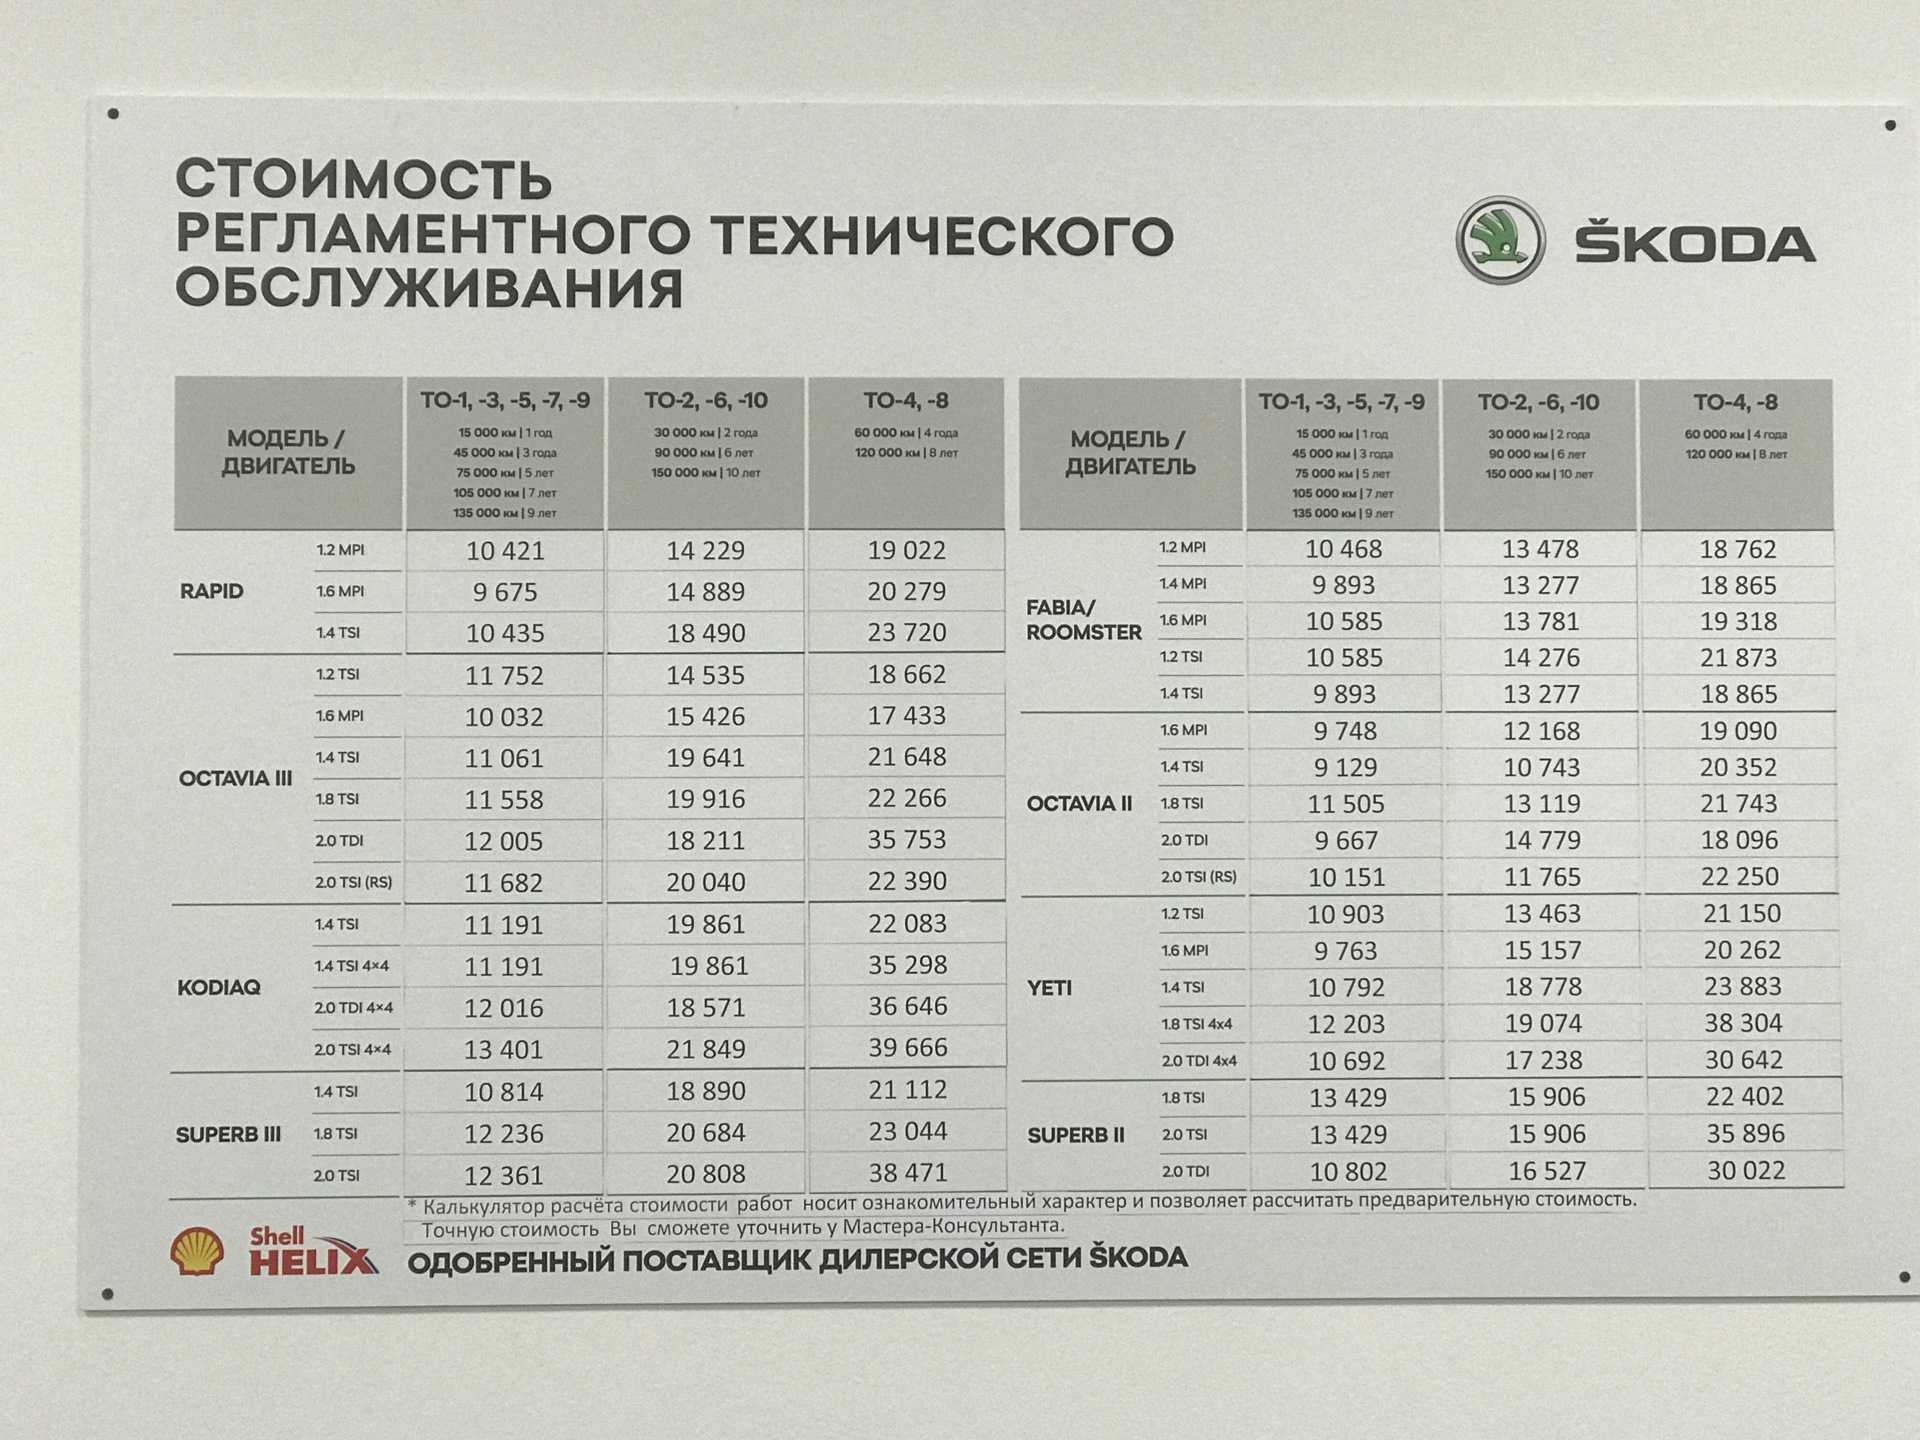 Skoda slavia — новый компактный седан (3 комплектации и 2 мотора). шкода славия 2022: стильный бюджетный седан для локальных рынков